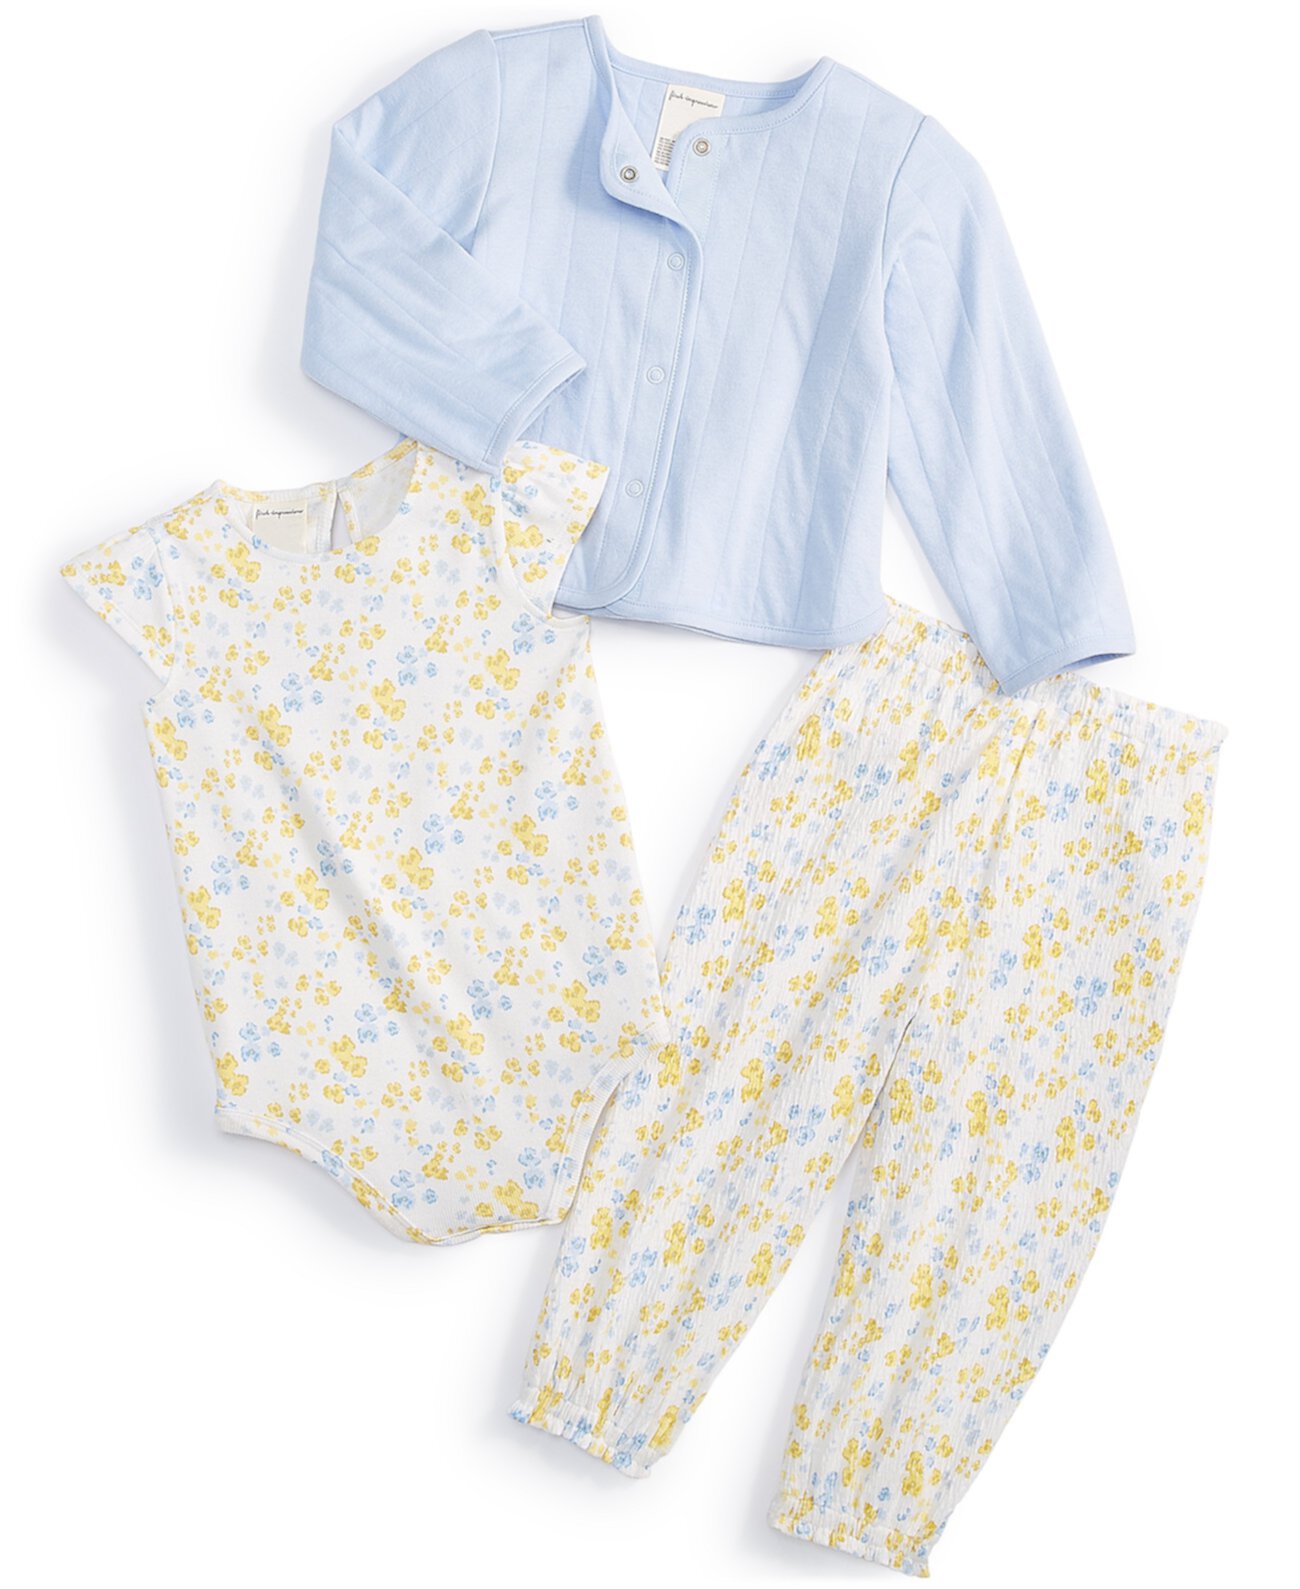 Кардиган, боди и брюки для маленьких девочек, комплект из 3 предметов, созданный для Macy's First Impressions